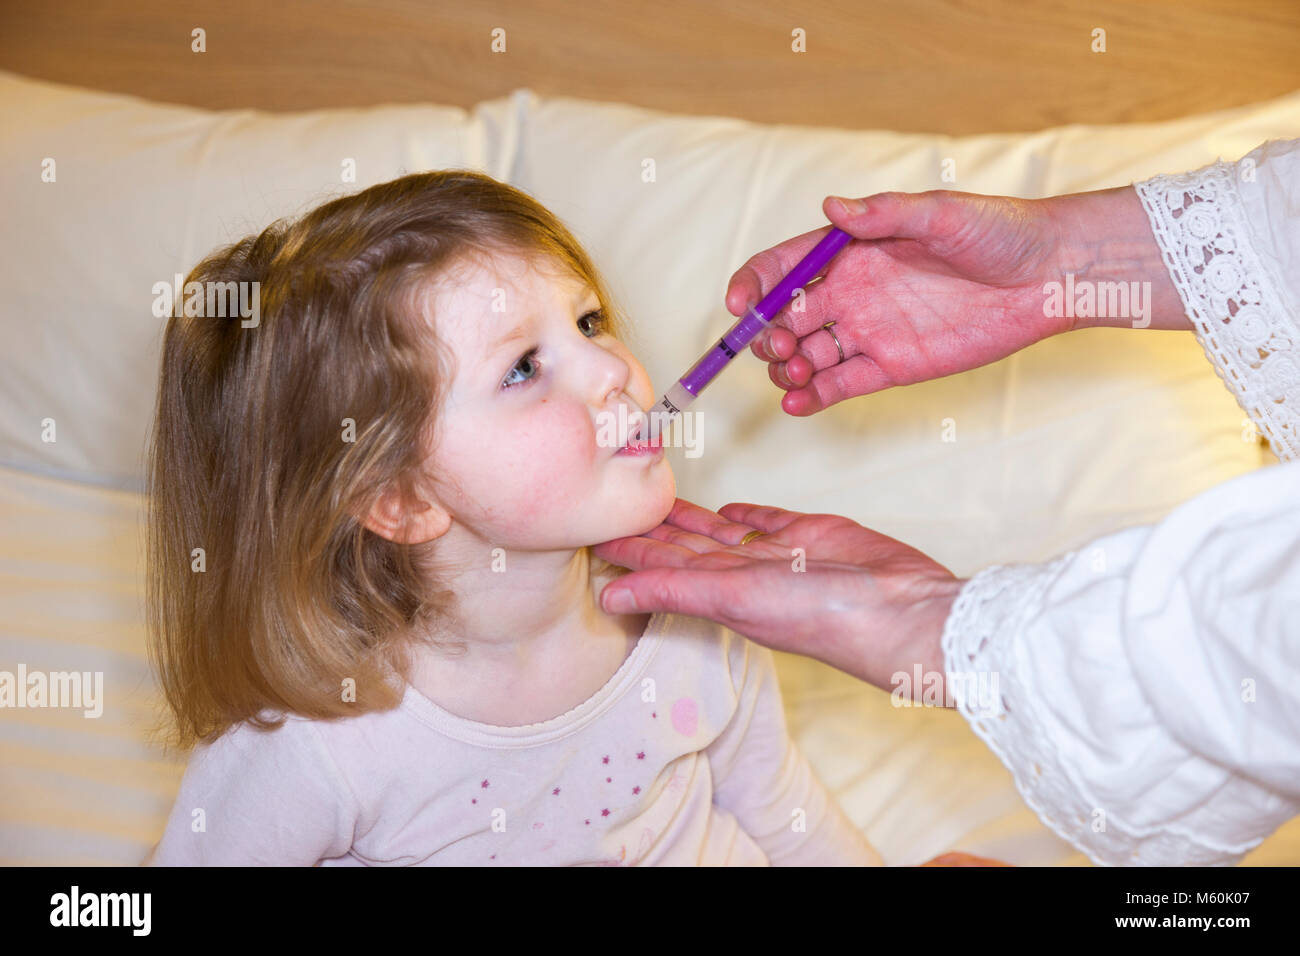 Mère / mère / mère donnant Calpol médicament avec du paracétamol pour - apparemment - un malade / enfant malade / enfant / fille au lit avec de la fièvre ou de la température. (95) Banque D'Images